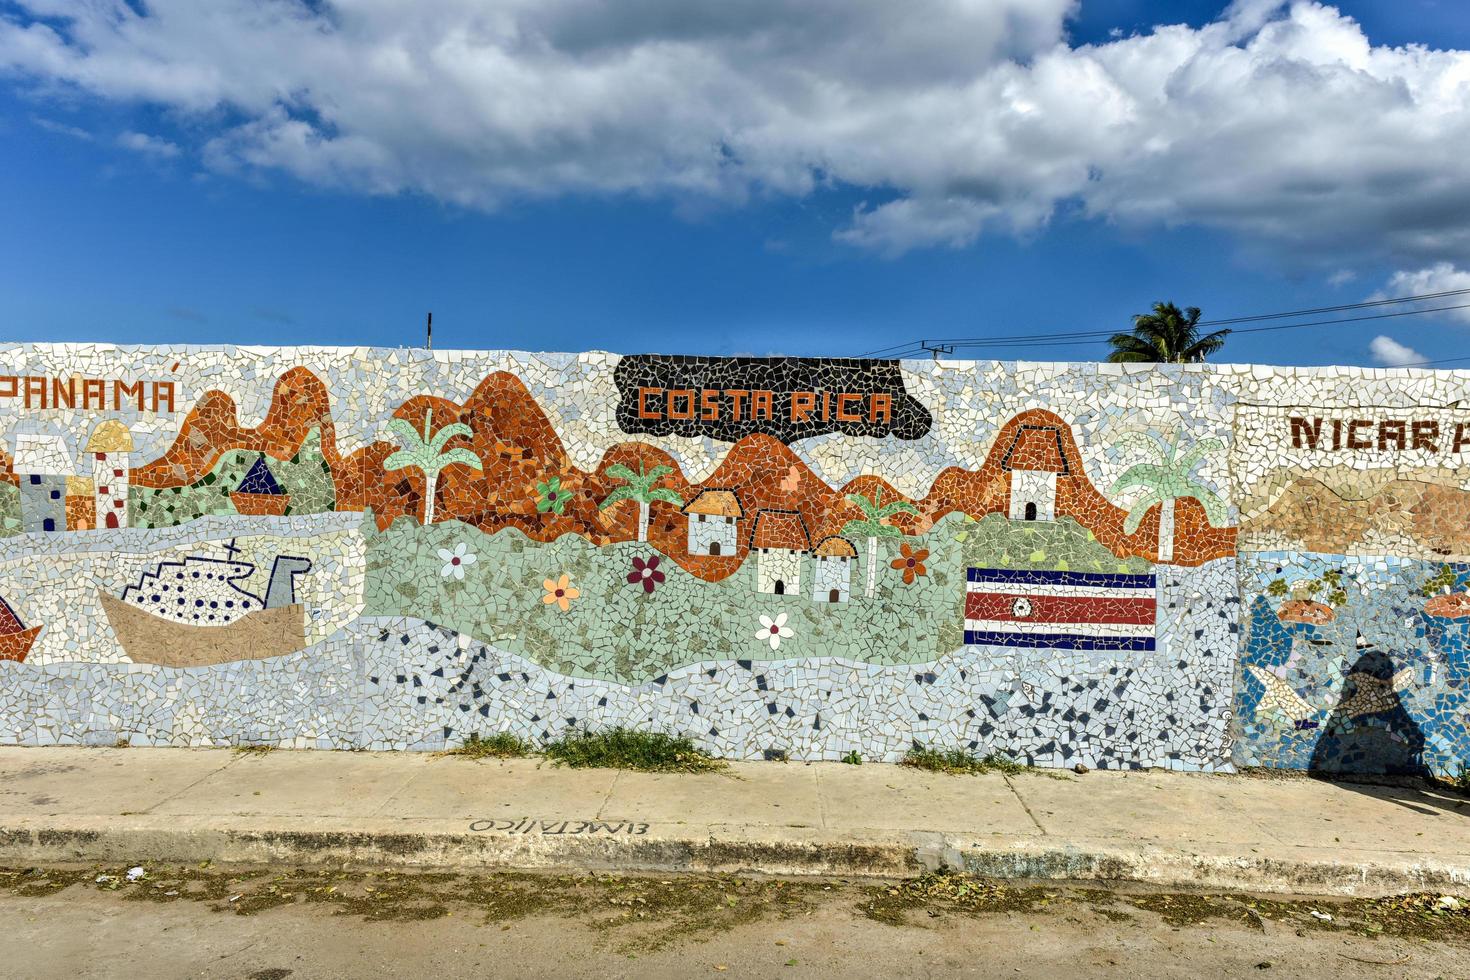 la havane, cuba - 14 janvier 2017 - quartier jaimanitas de la havane, cuba, plus communément connu sous le nom de fusterlandia pour les mosaïques colorées. photo